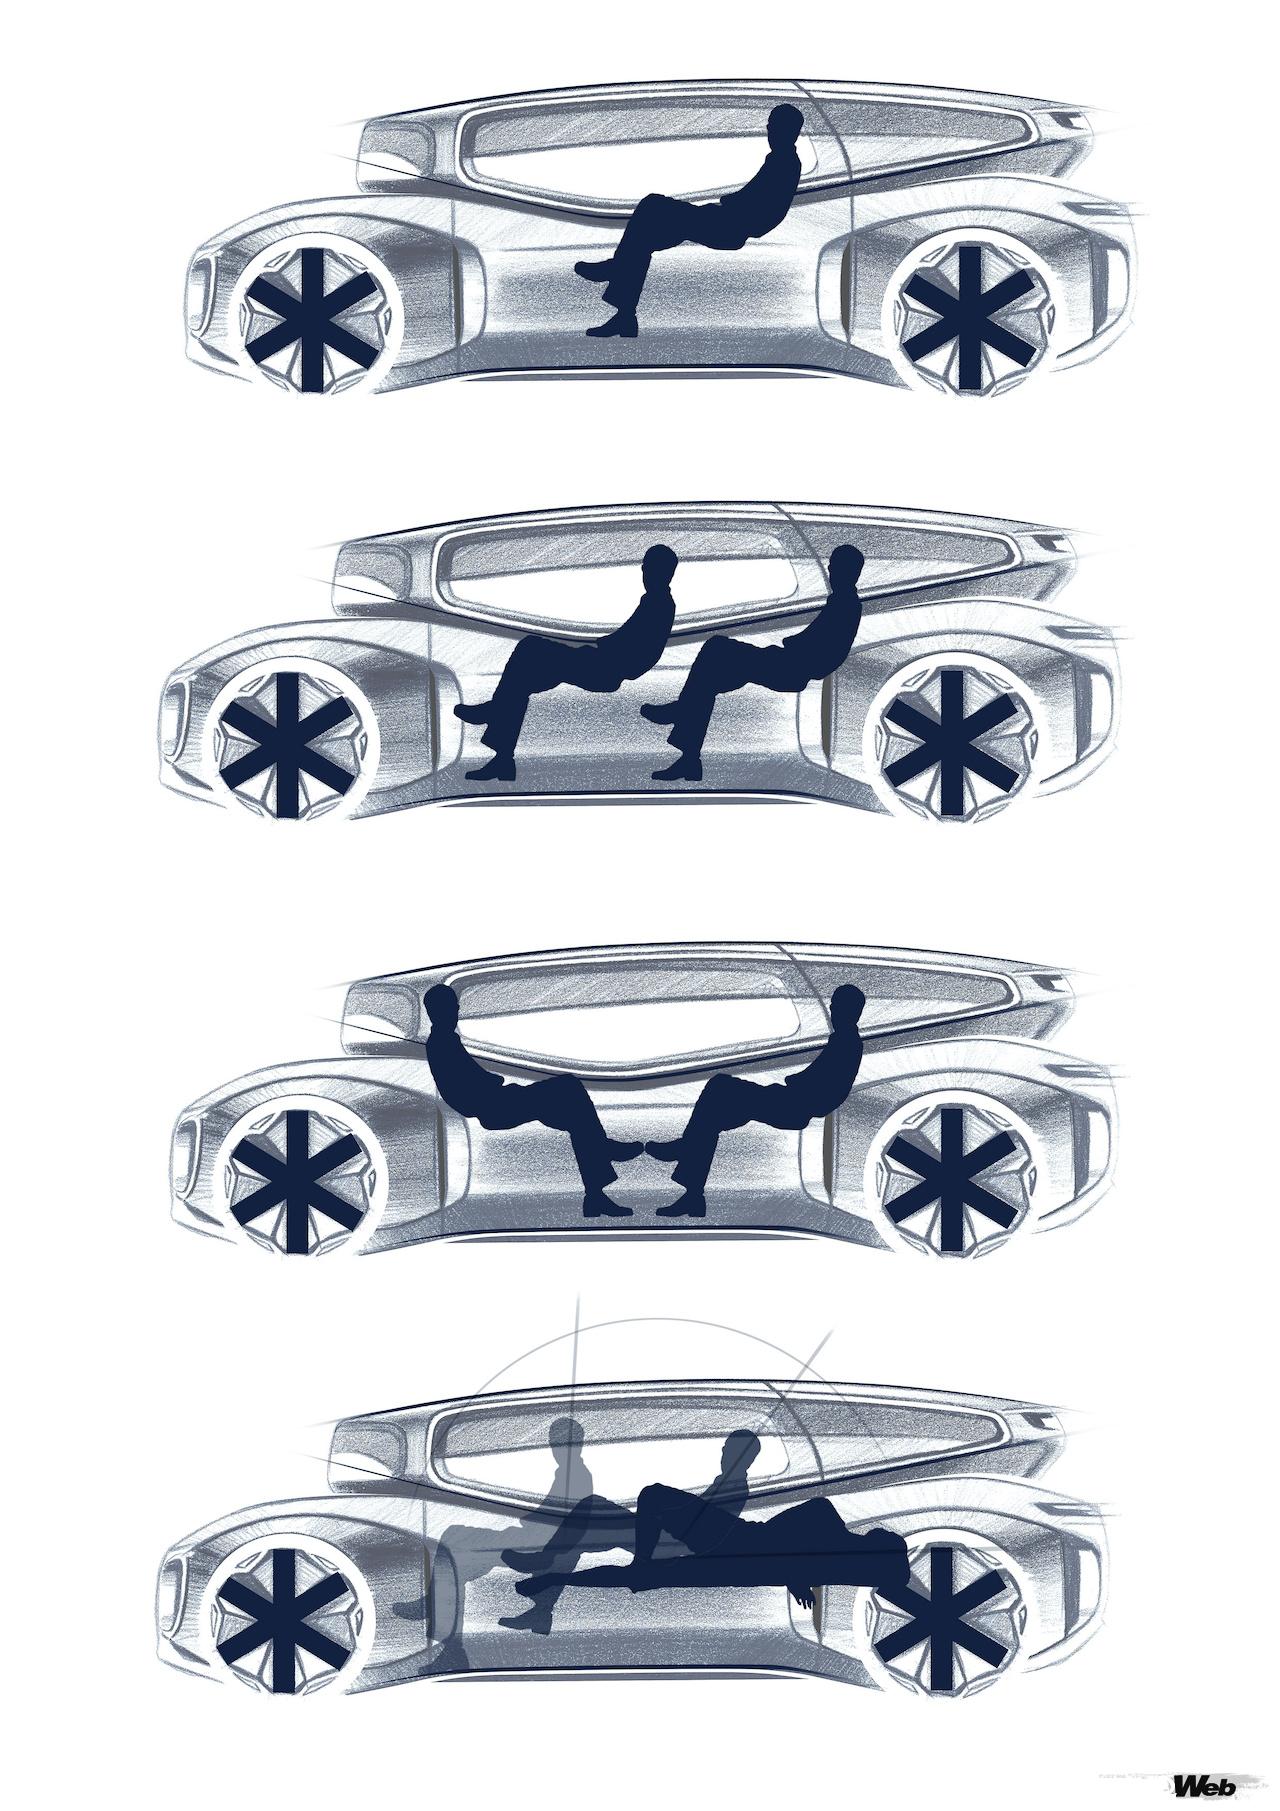 「「ガルウィングのMPV!?」フォルクスワーゲンが提案する電気自動車は居間にも寝室にも変身できる」の24枚目の画像